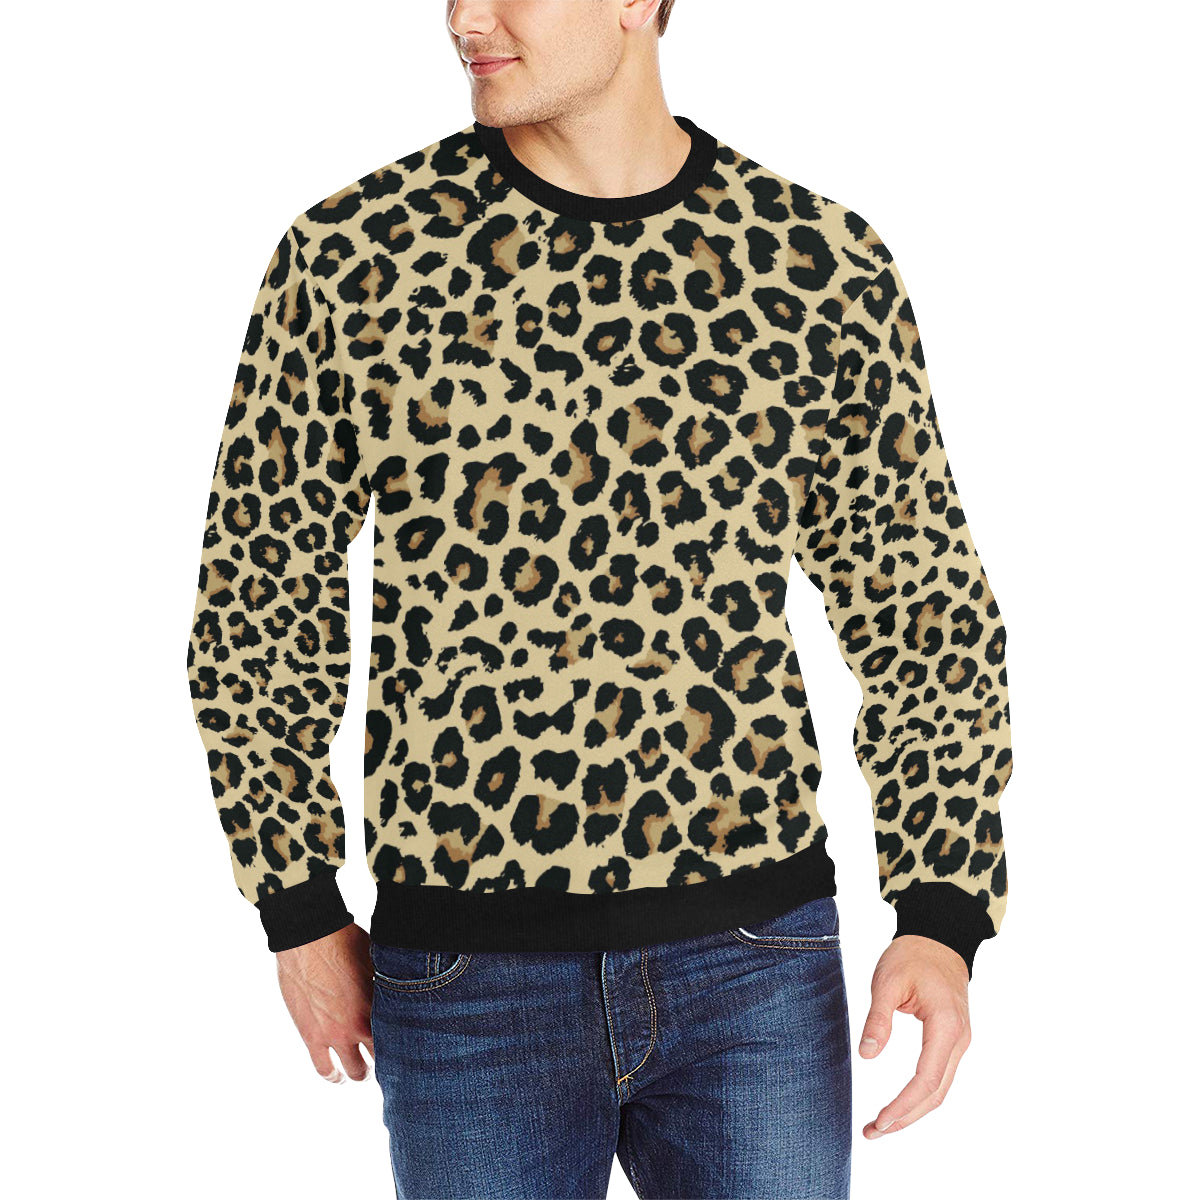 Leopard print design pattern Men’s Crew Neck Sweatshirt